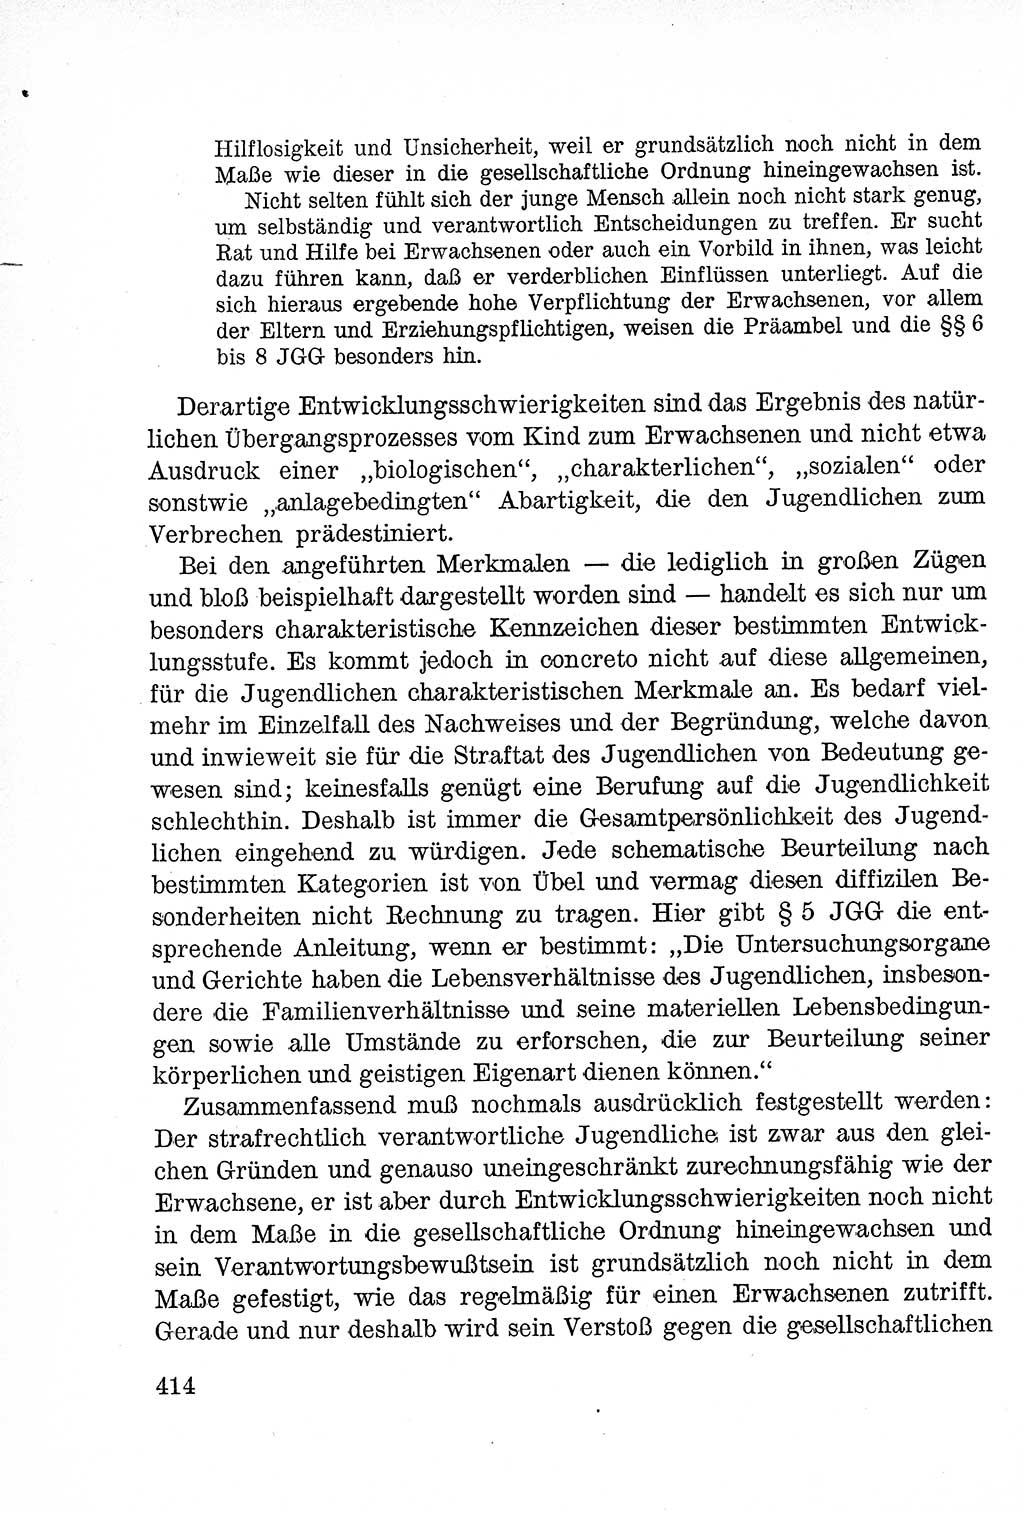 Lehrbuch des Strafrechts der Deutschen Demokratischen Republik (DDR), Allgemeiner Teil 1957, Seite 414 (Lb. Strafr. DDR AT 1957, S. 414)